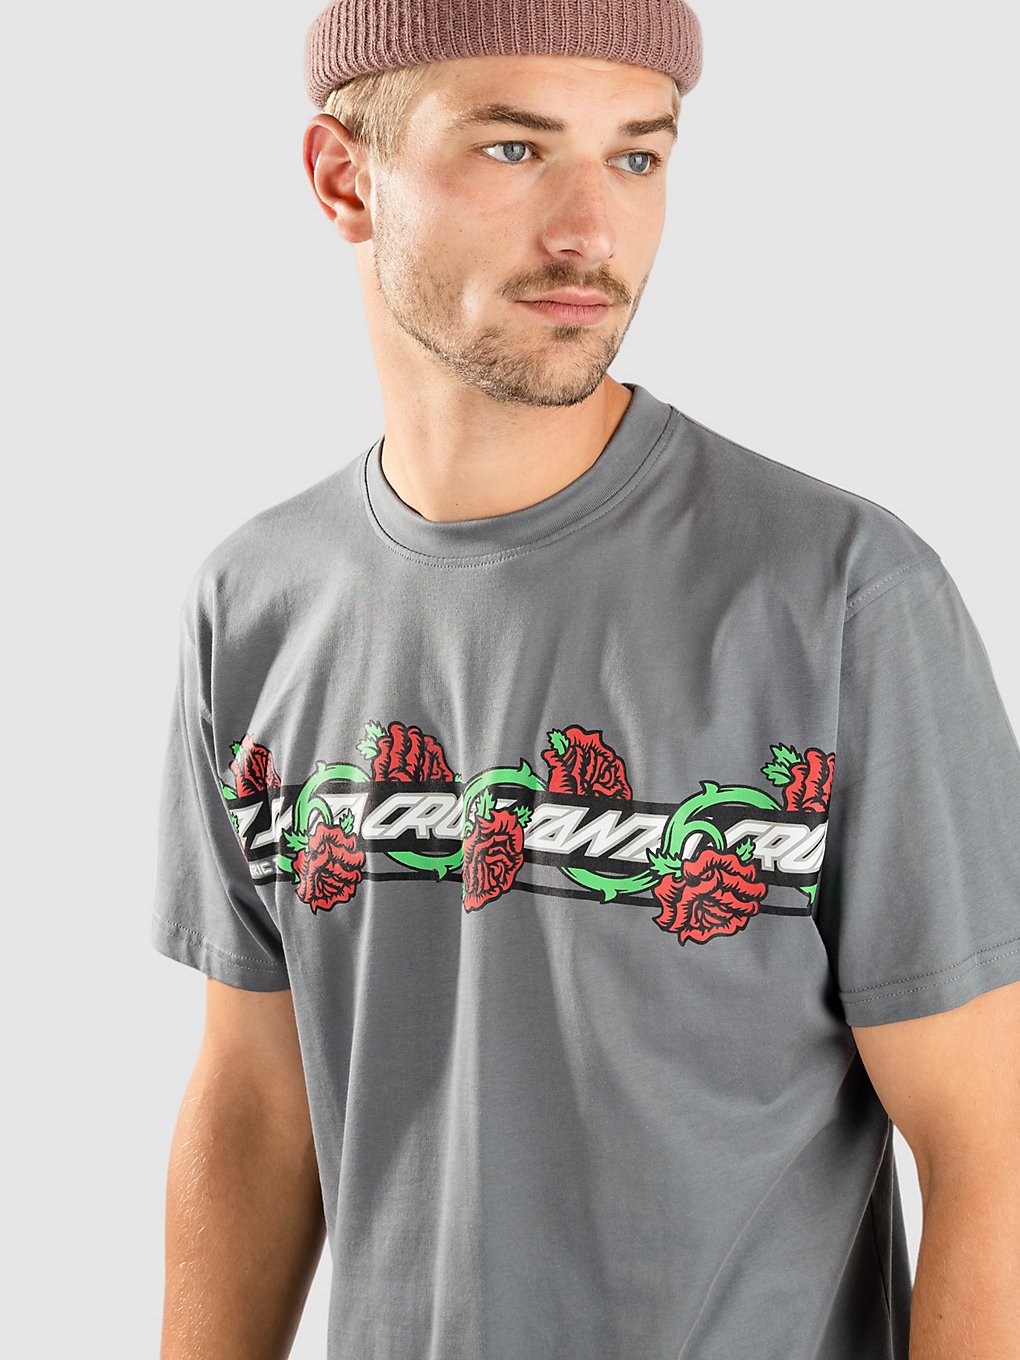 Santa Cruz jurkjeen Roses Ever-Slick T-Shirt grijs